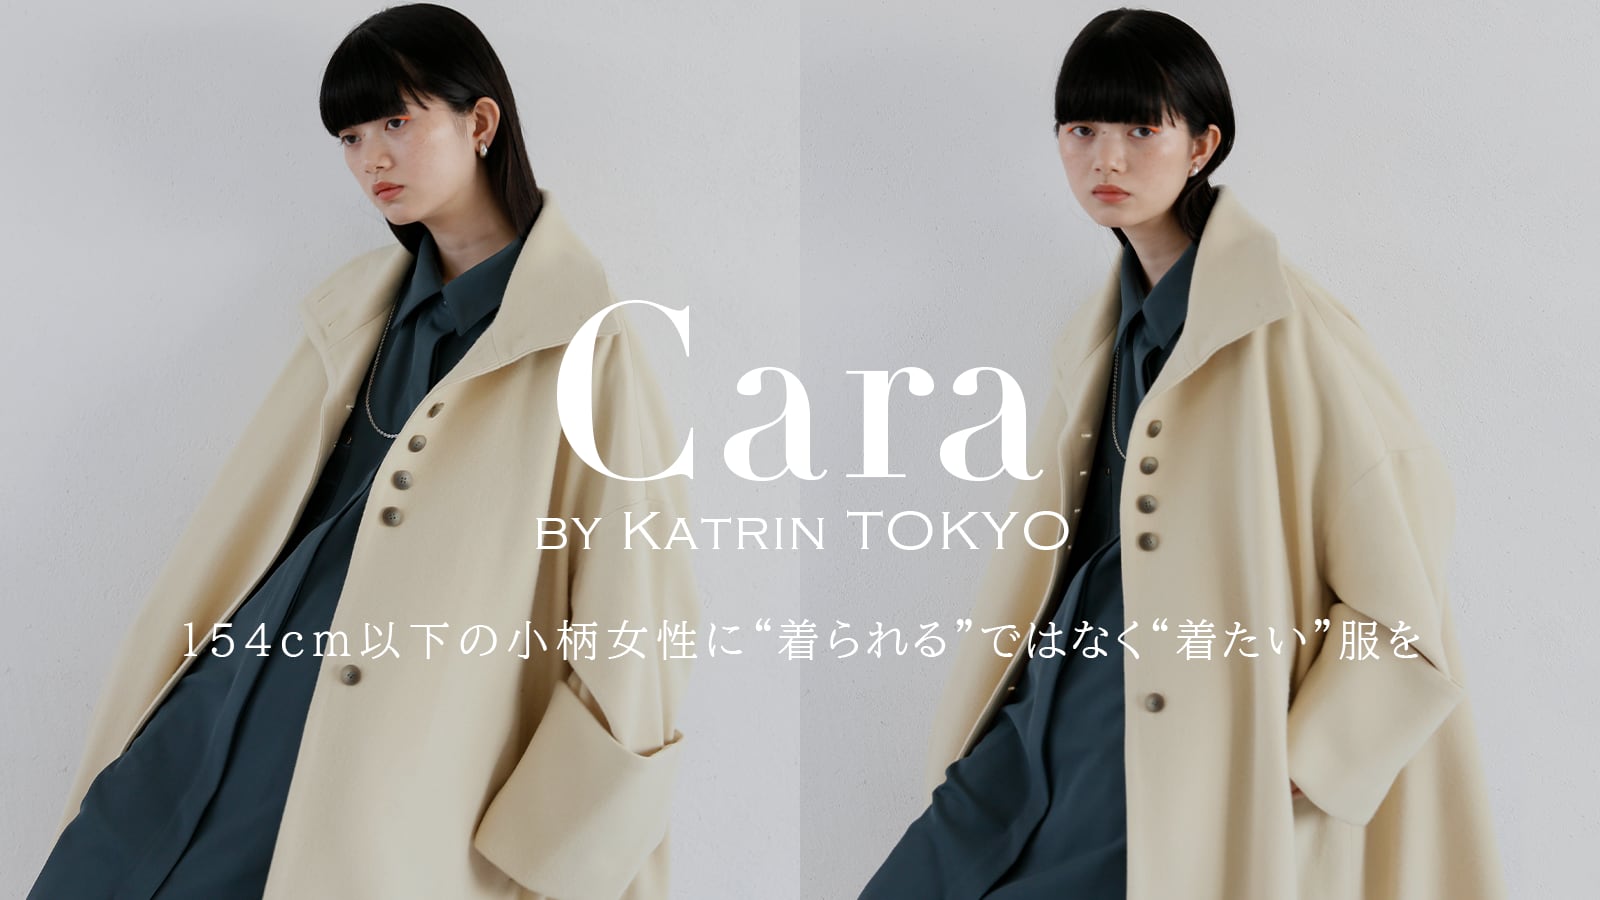 Cara by Katrin TOKYO